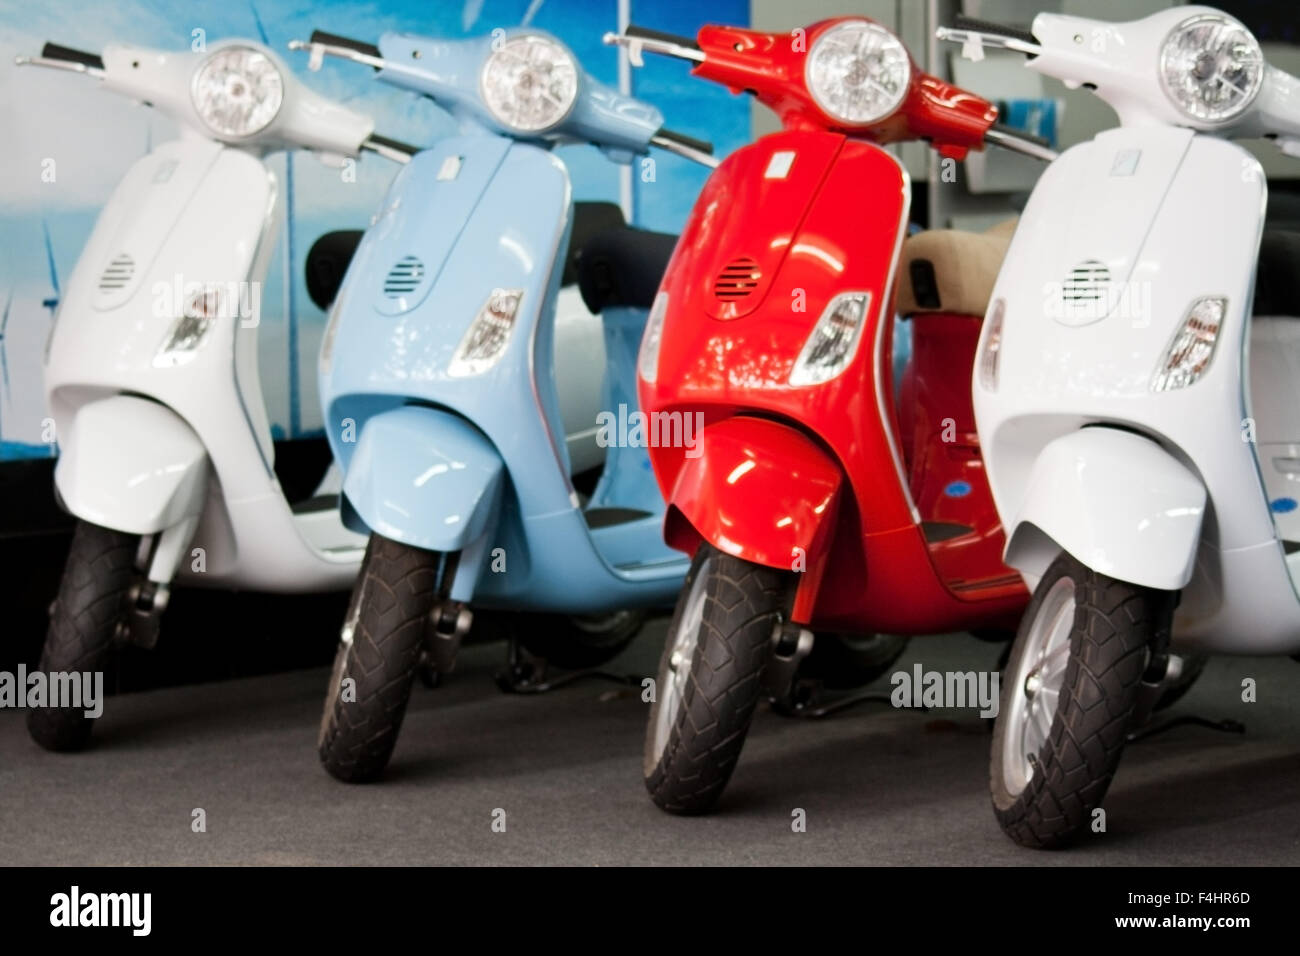 Quattro colori diversi Vespa scooter in showroom, nuovo, immacolata, incontaminato, raffreddare, chic, elegante italiana ciclomotori e iconico modalità di trasporto Foto Stock